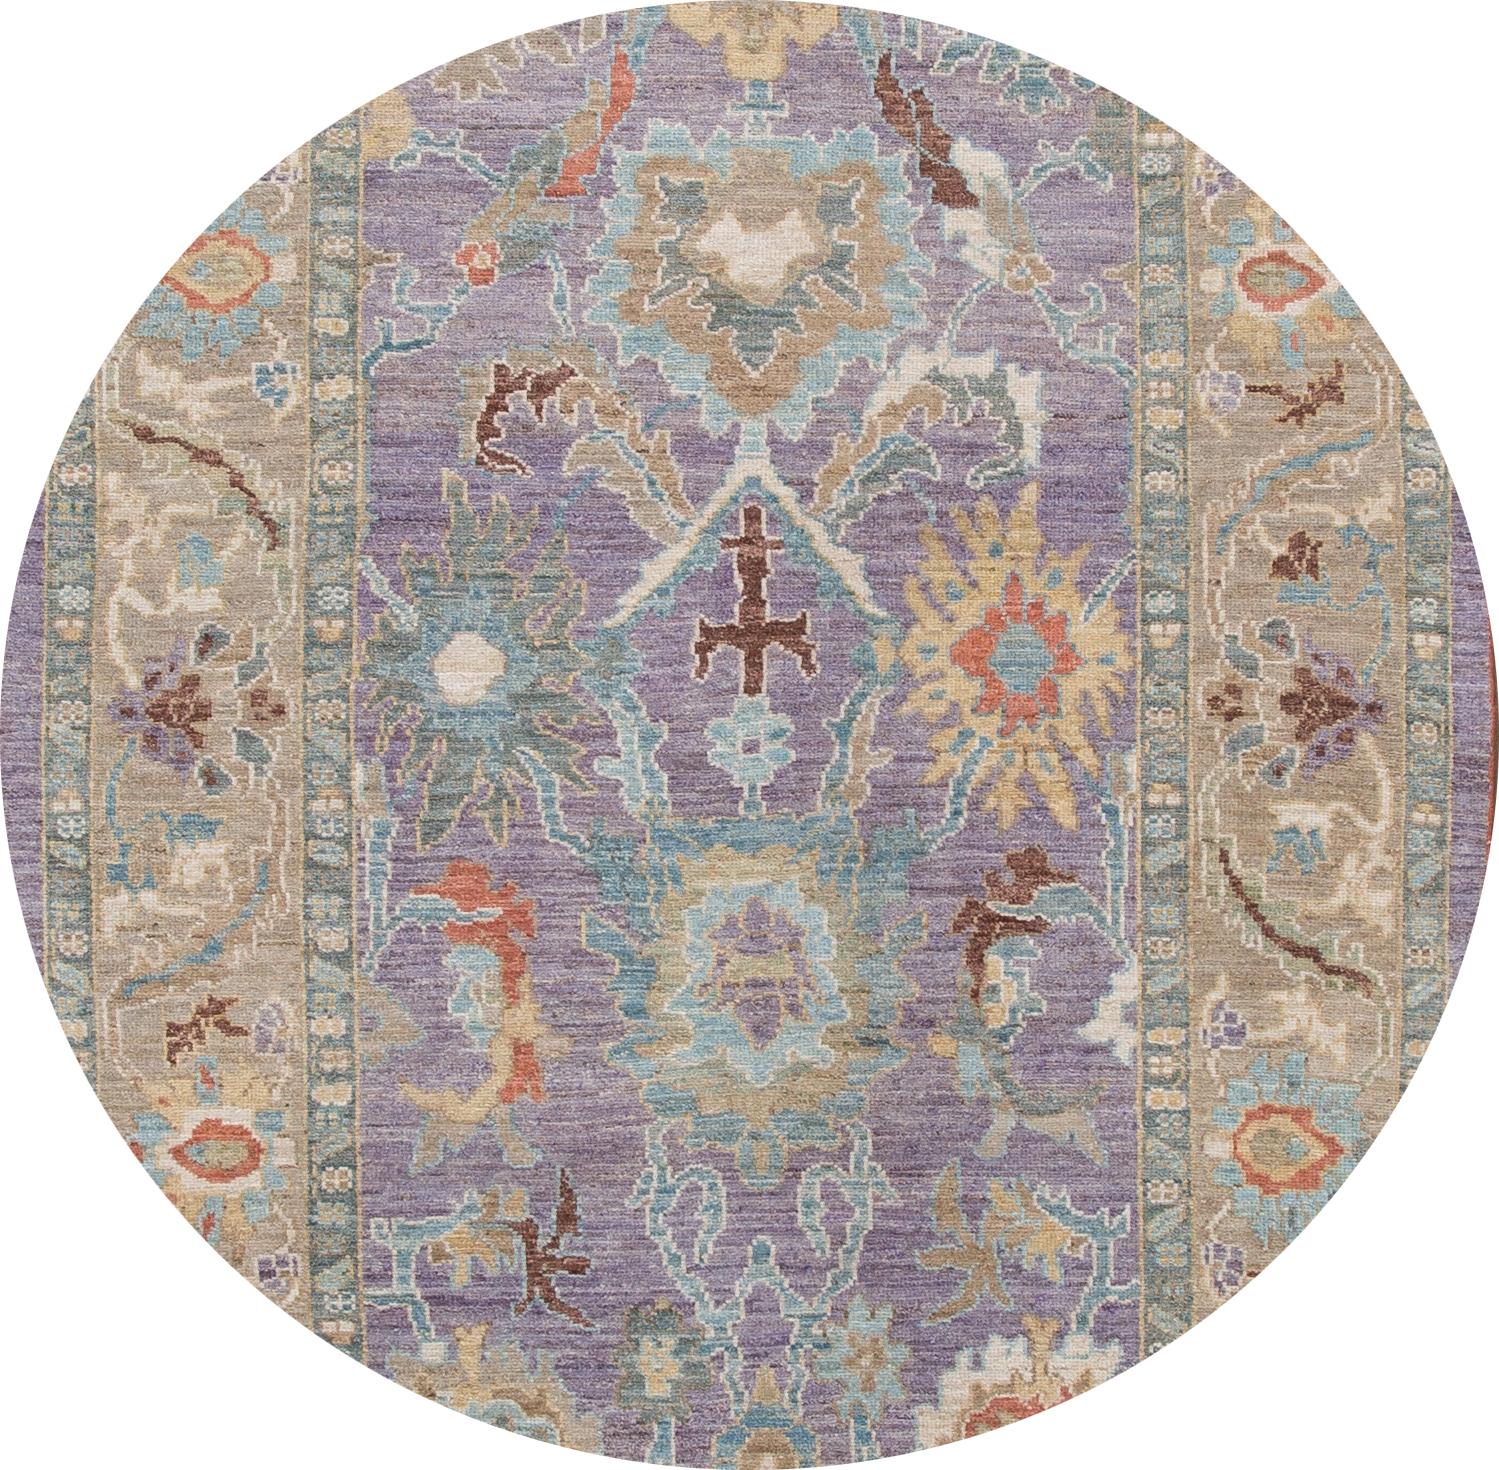 Schöner zeitgenössischer Sultanabad-Teppich, handgeknüpft aus Wolle mit violettem Feld. Dieser Teppich hat einen beigen Rahmen und mehrfarbige Akzente in einem klassischen floralen Medaillon-Design.

Dieser Teppich misst: 6' x 8'10